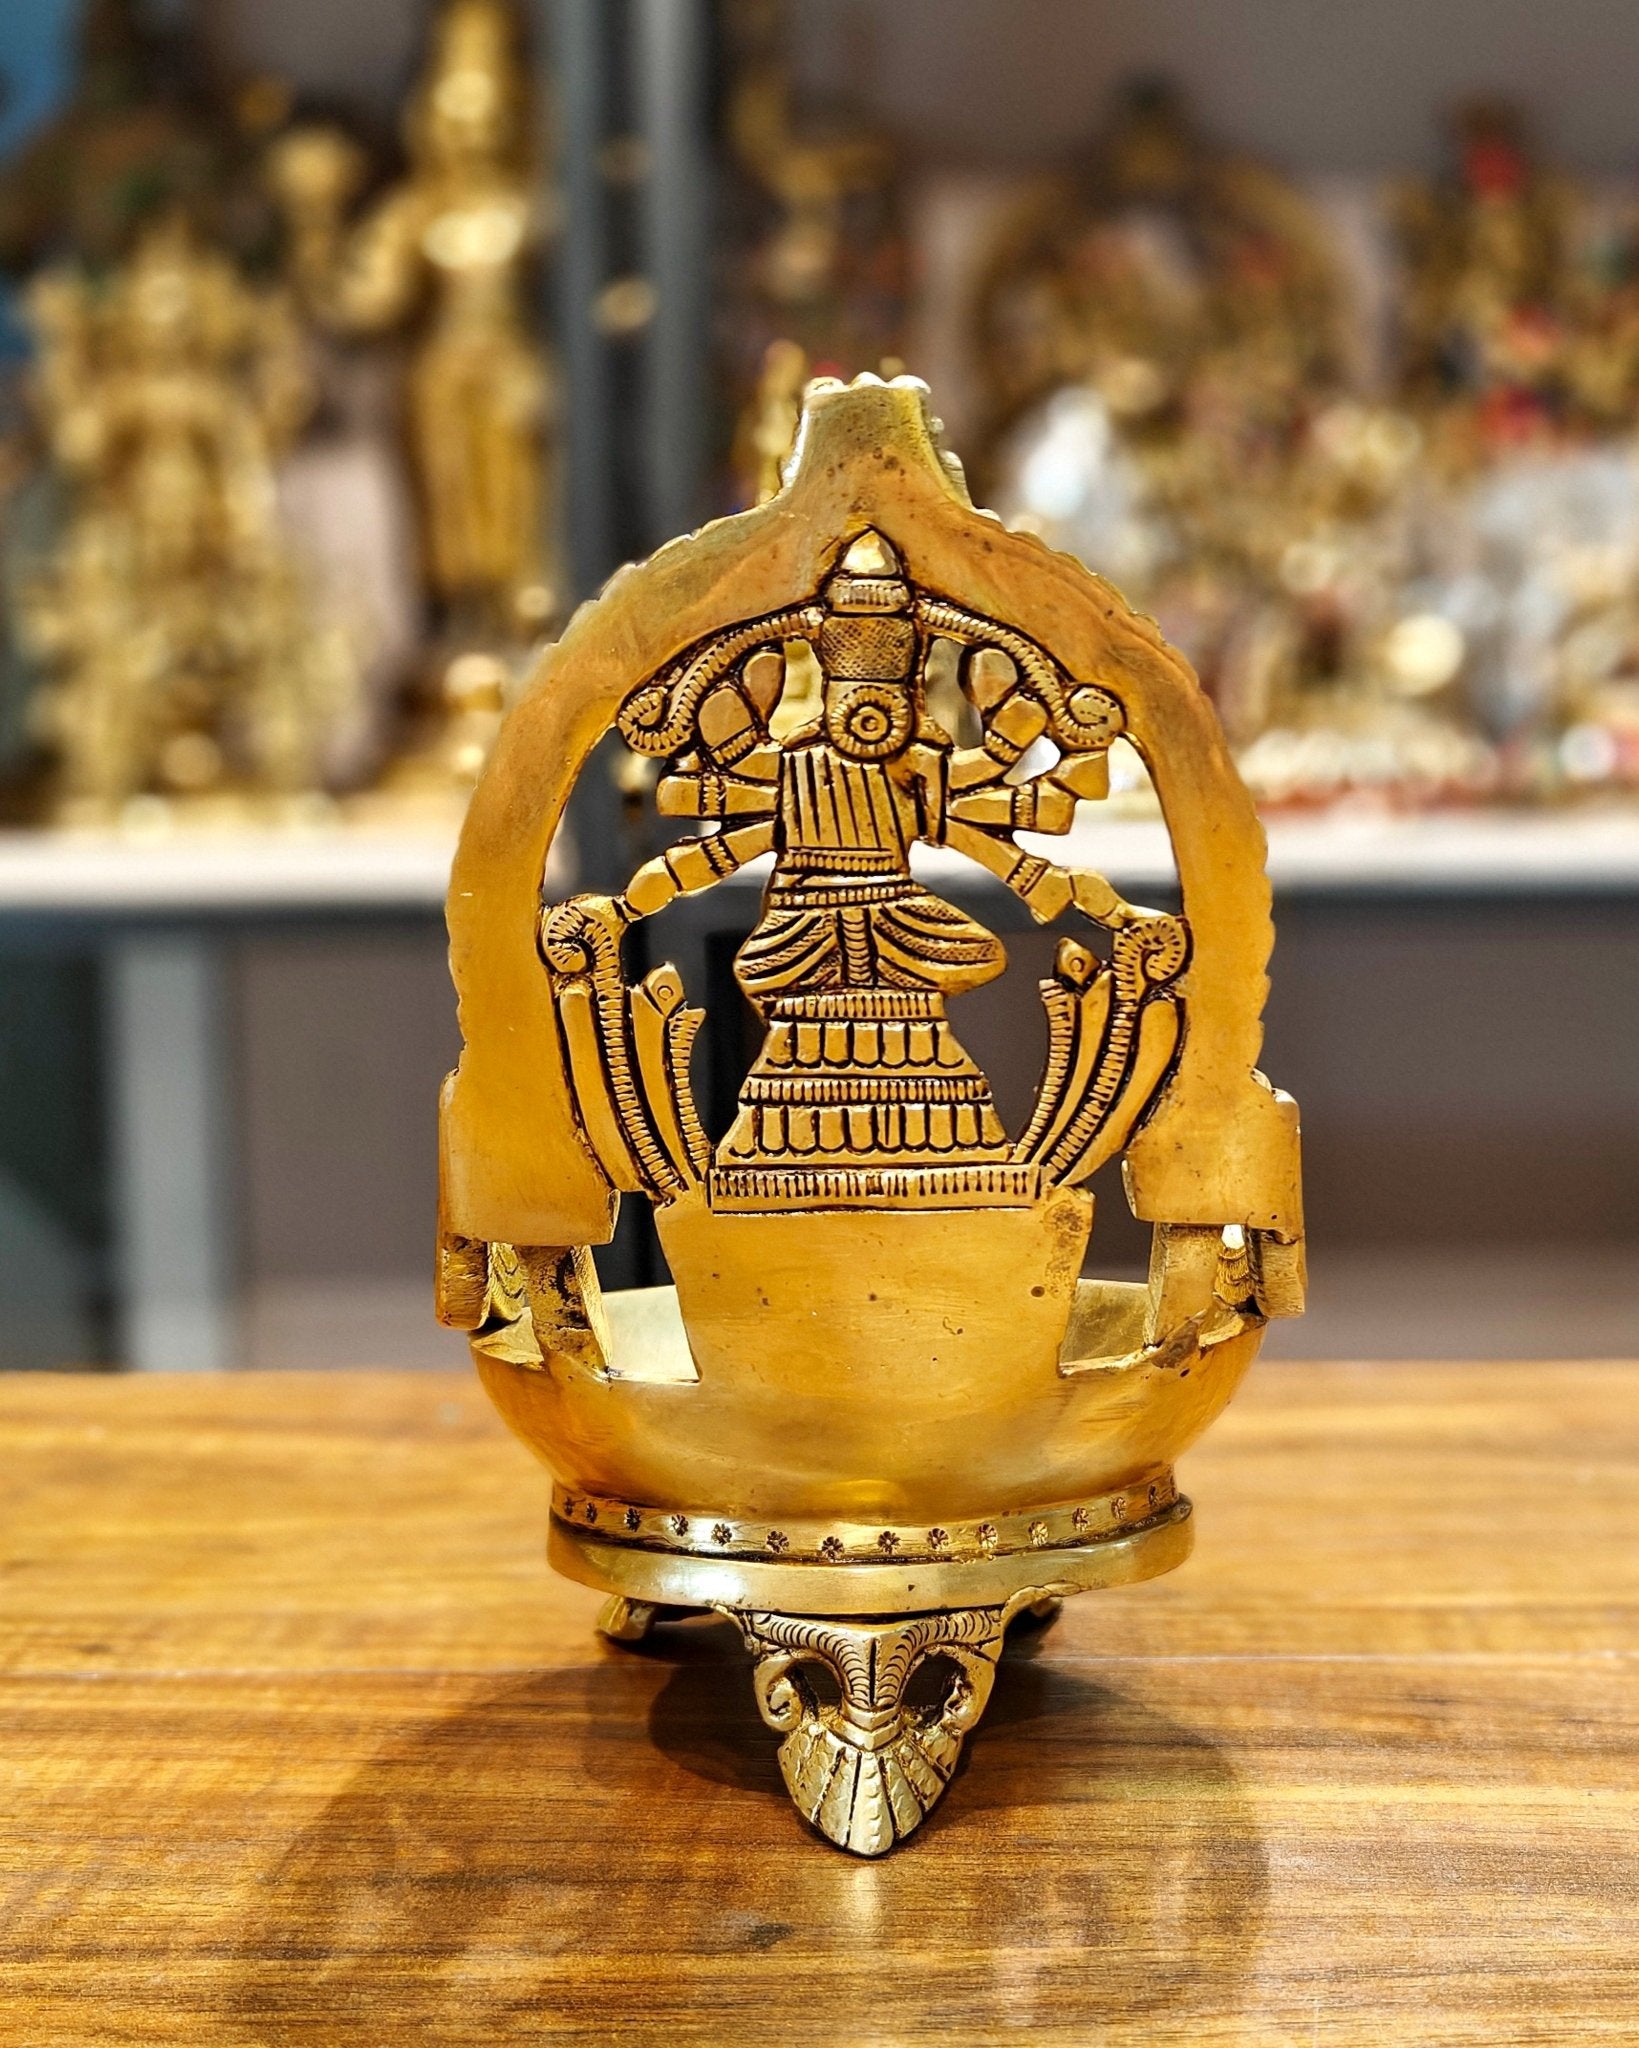 Superfine Brass Varahi Vilakku Oil Lamp Diya 7 inch - Budhshiv.com